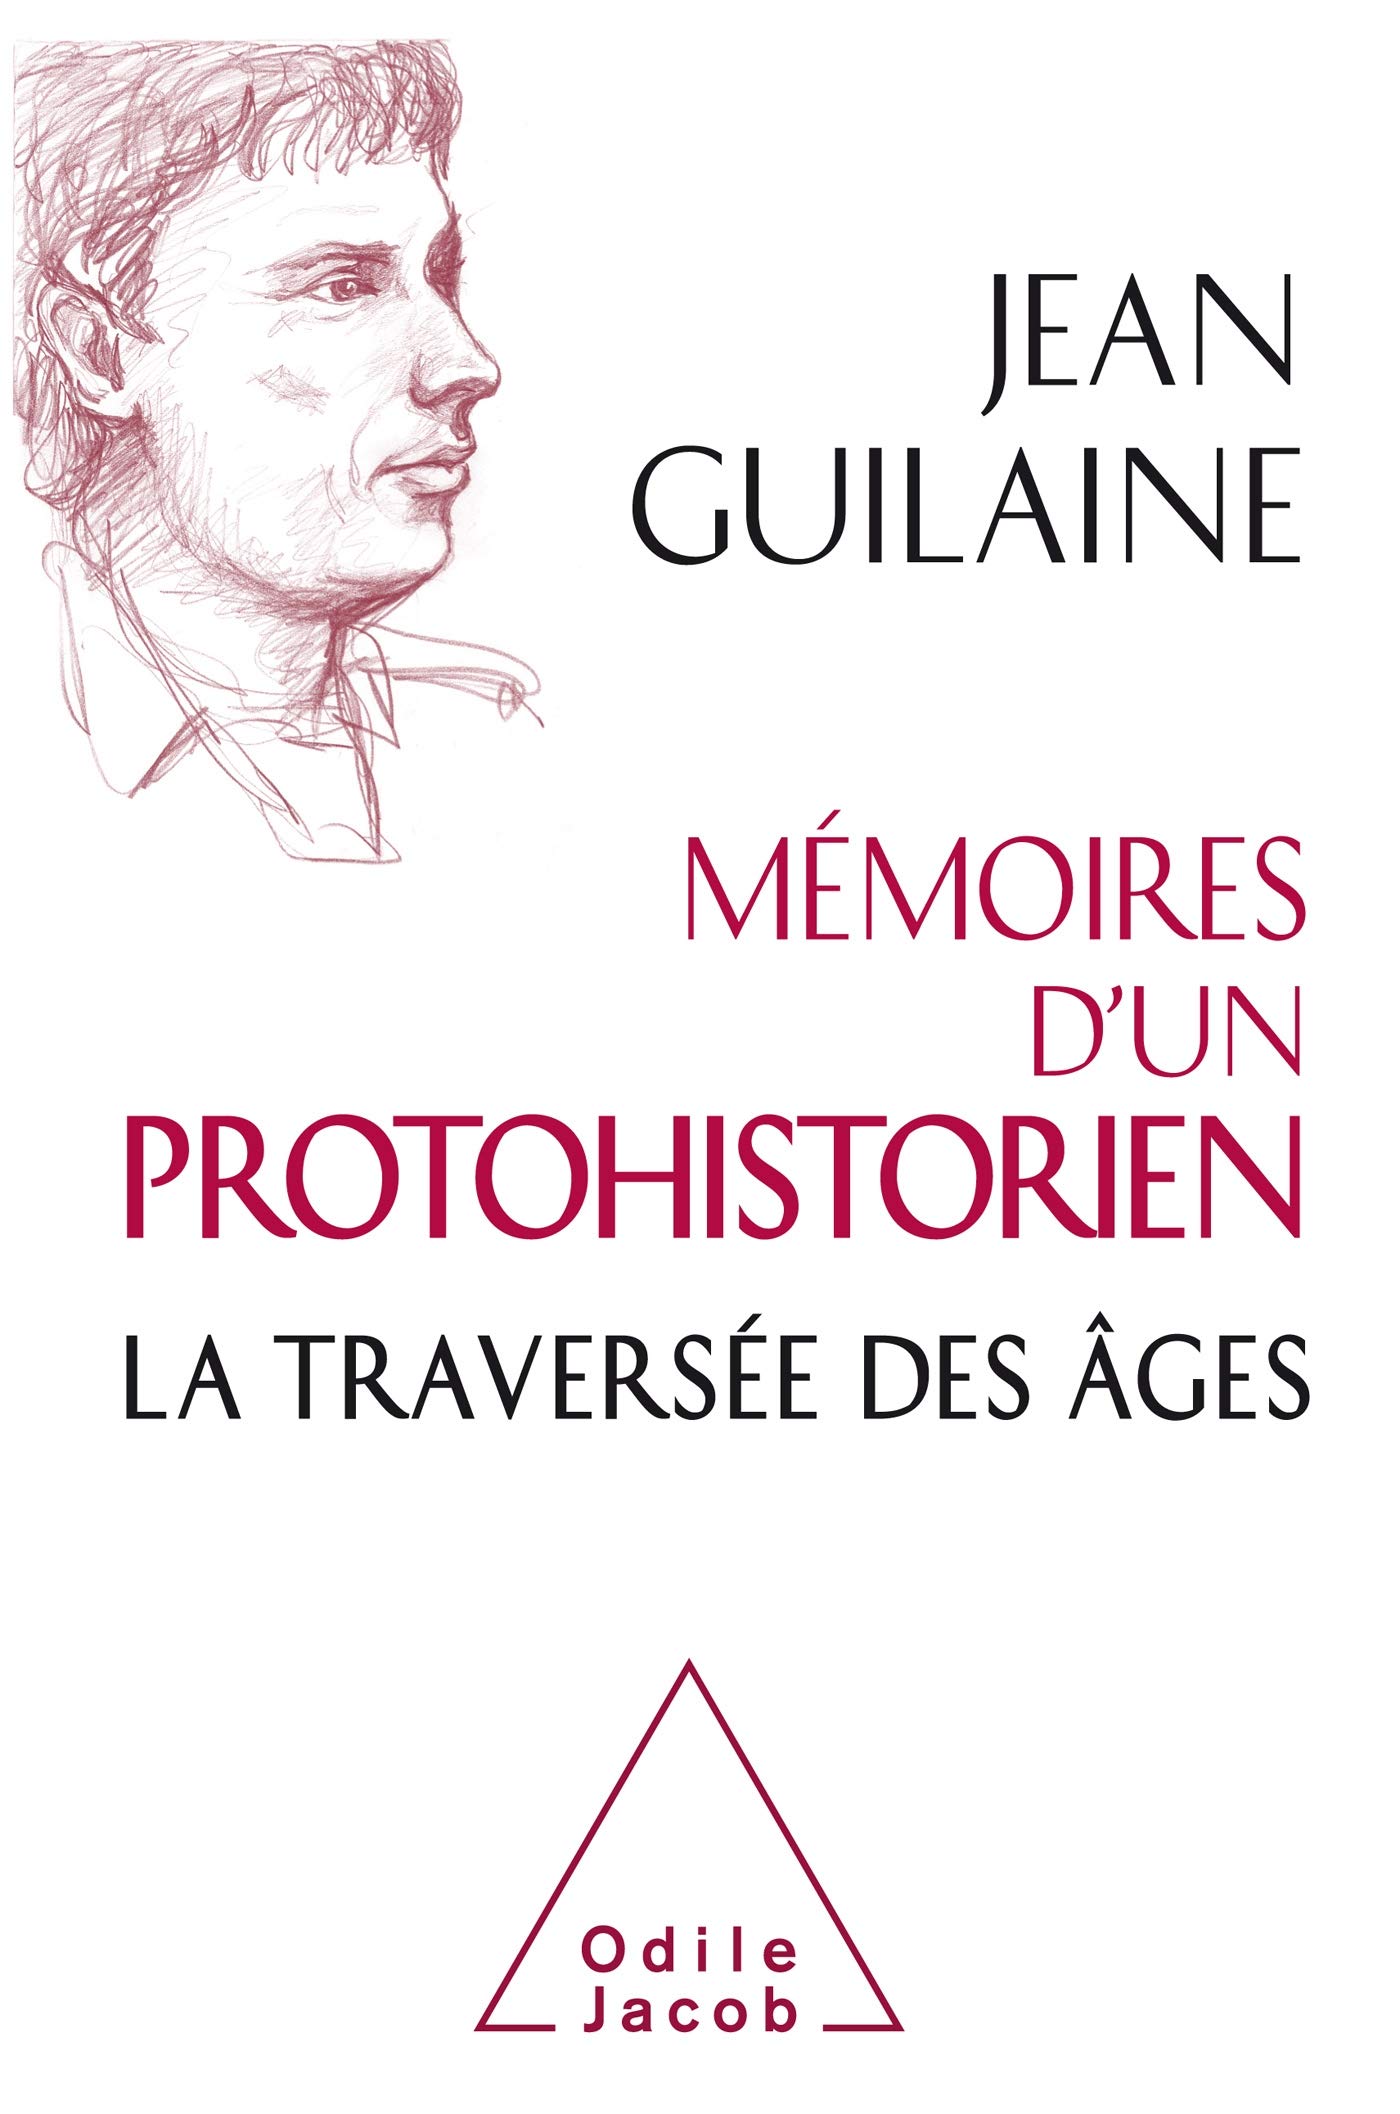 Mémoires d'un protohistorien. La traversée des âges, 2019, 480 p.